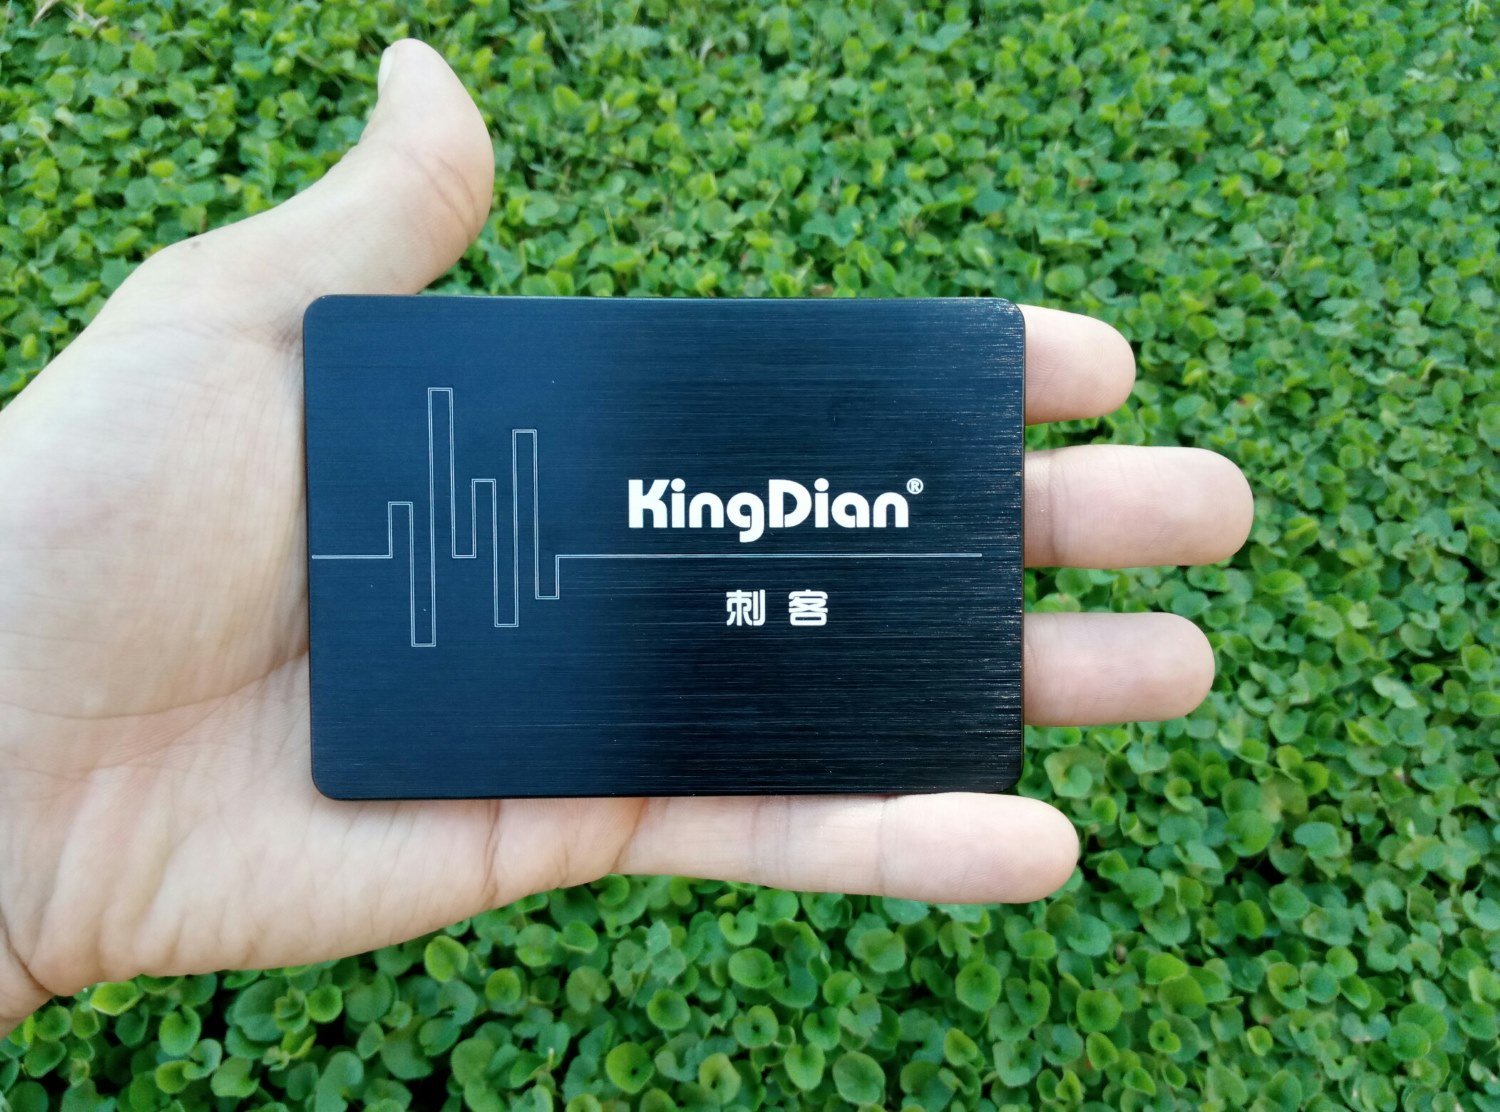 KingDian SSD 240GB